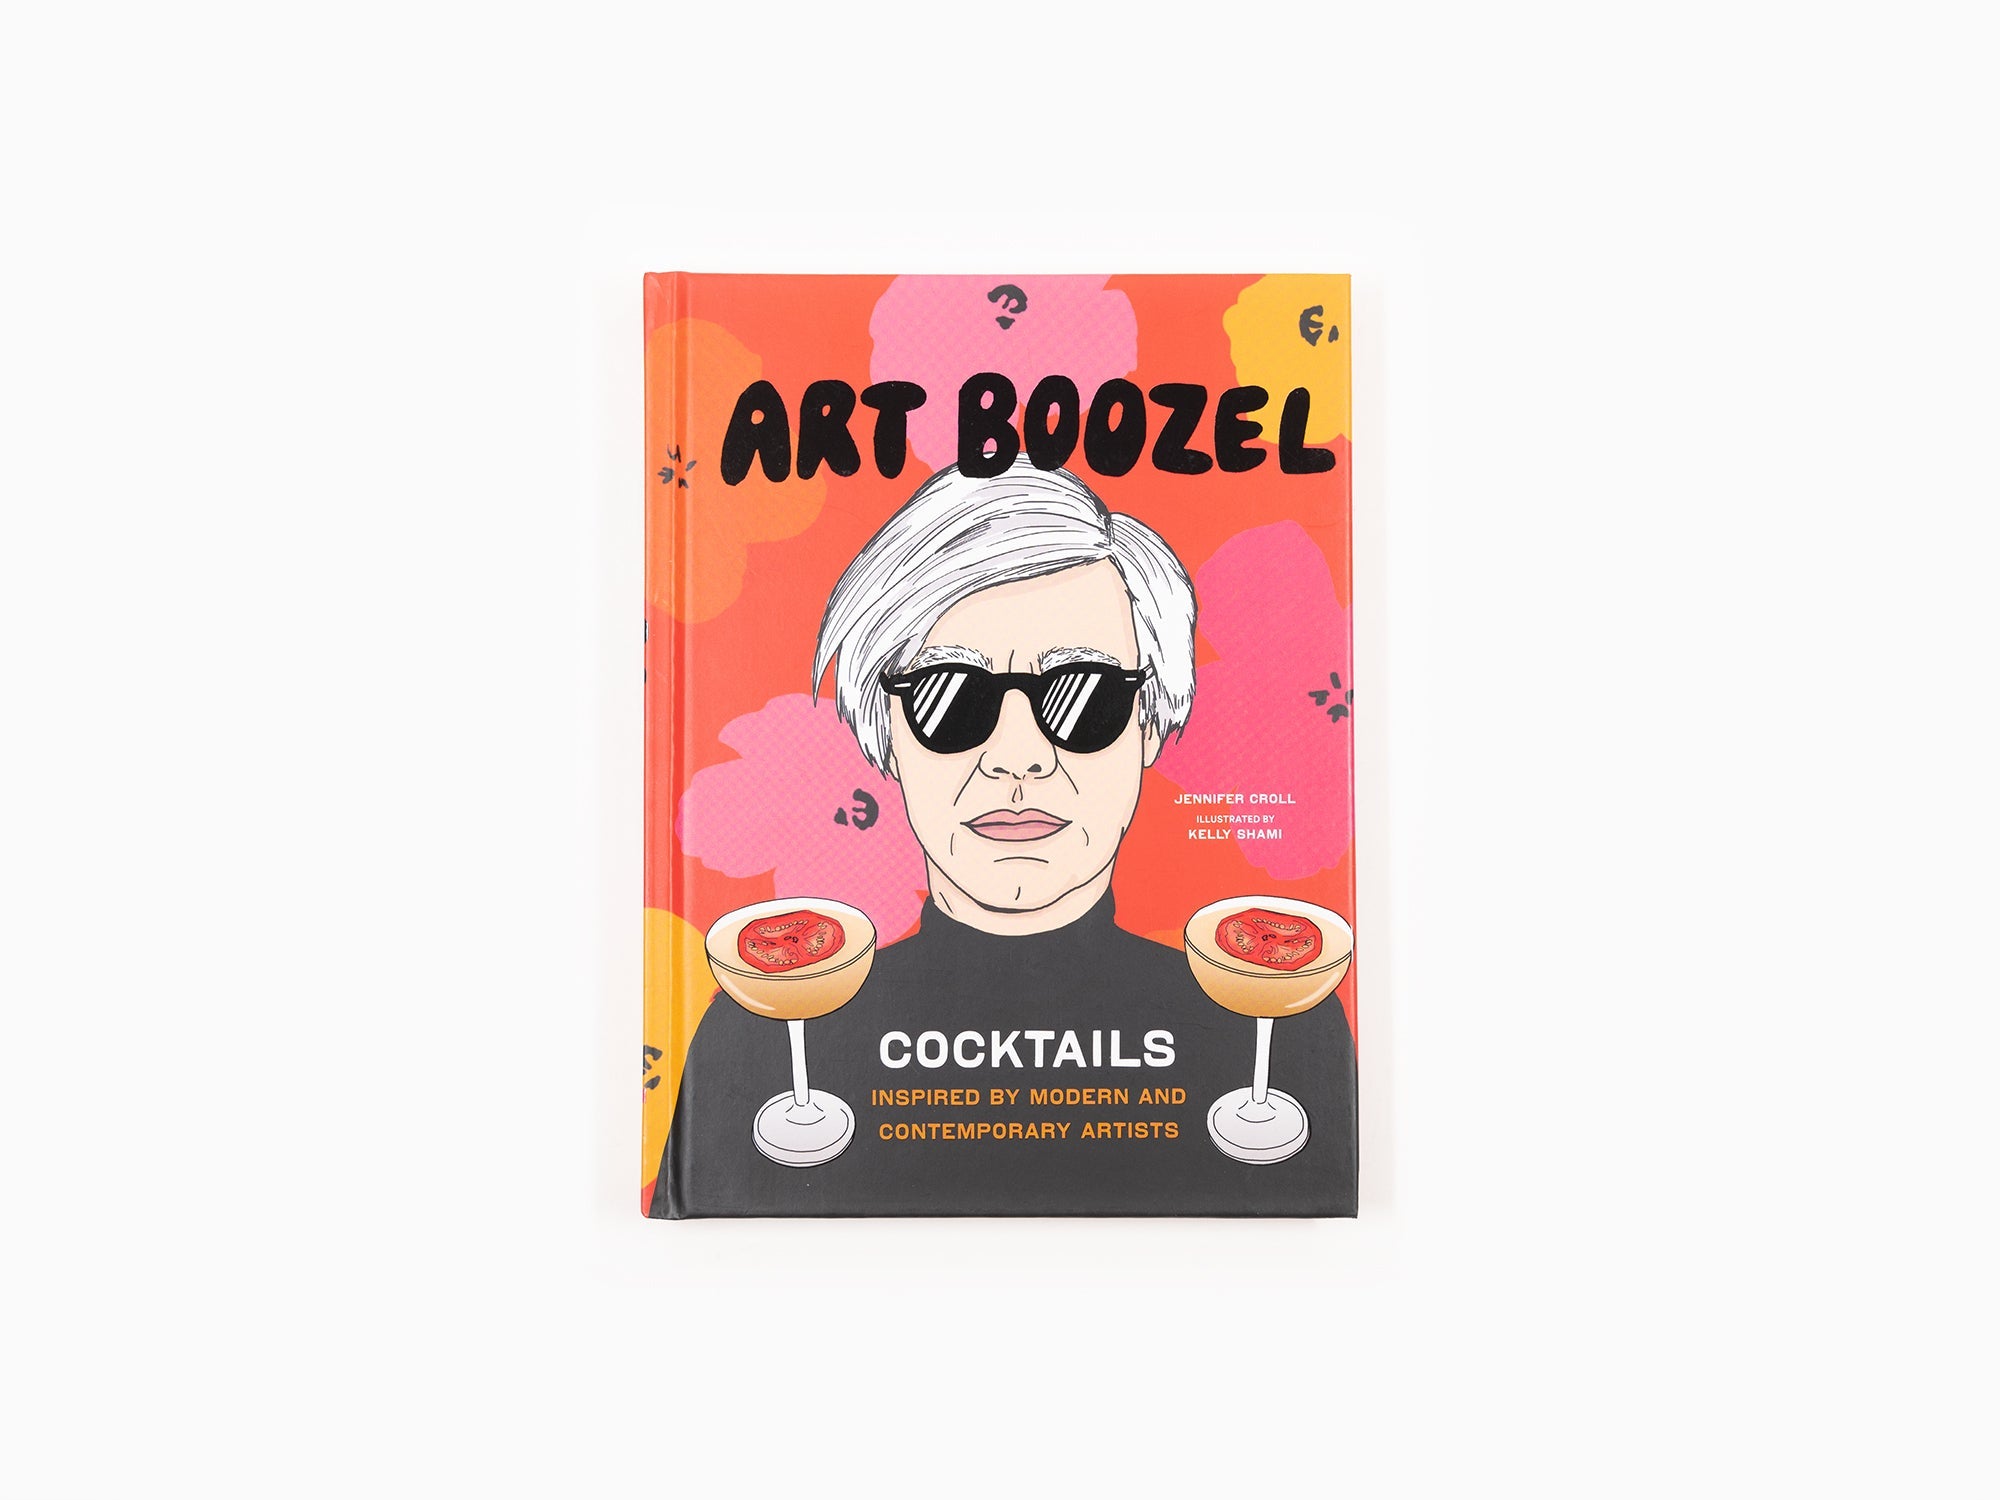 Jennifer Croll & Kelly Shami - Art Boozel, Cocktails inspirés par des artistes modernes et contemporains